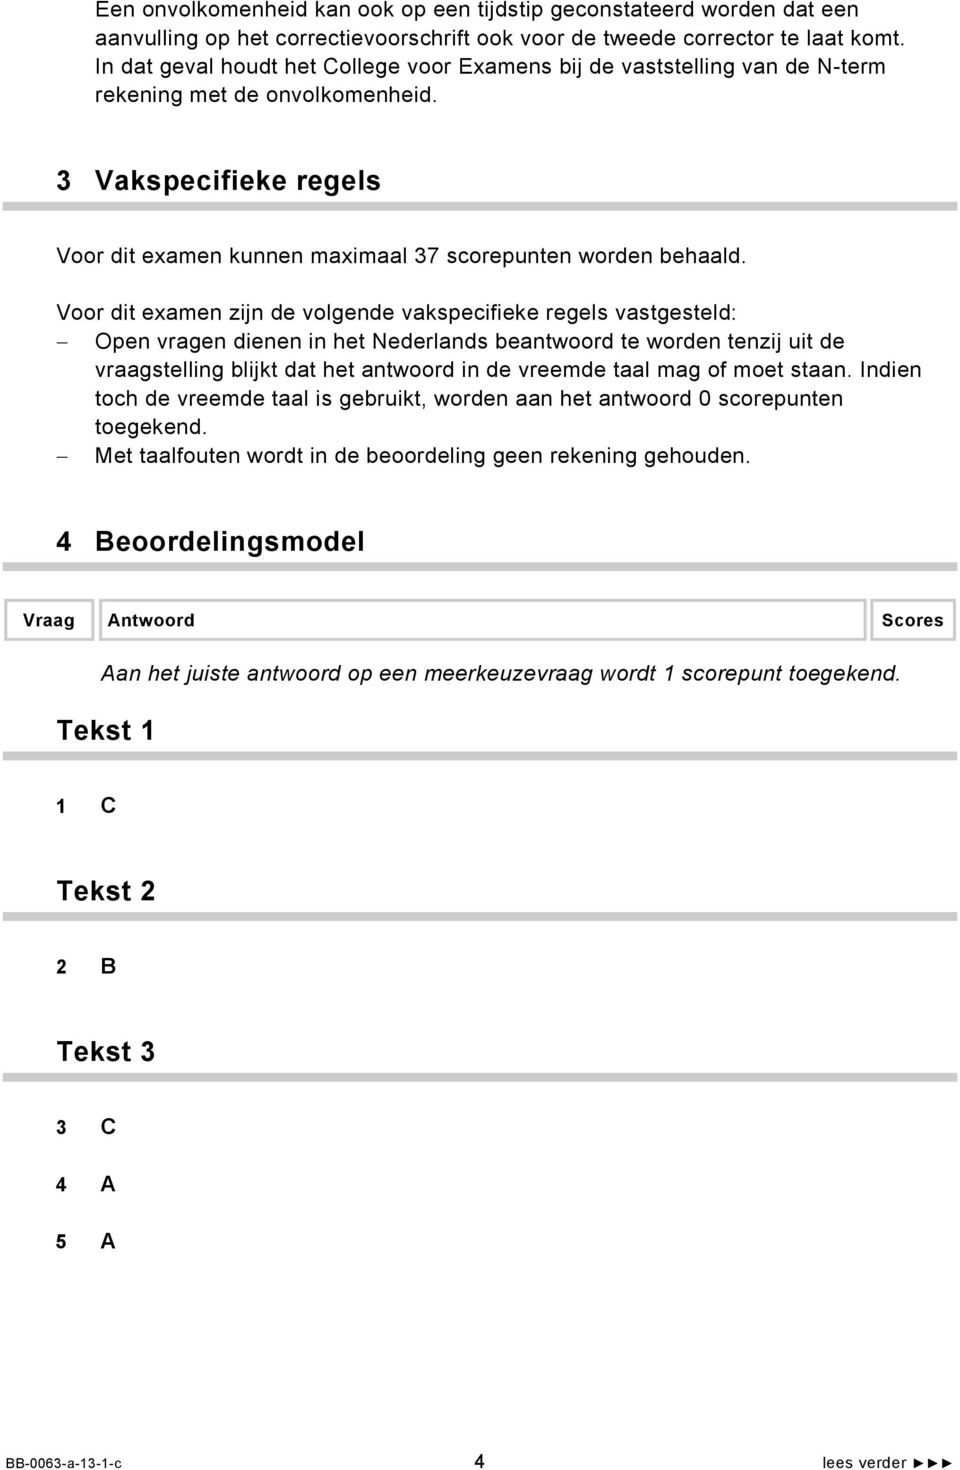 Voor dit examen zijn de volgende vakspecifieke regels vastgesteld: Open vragen dienen in het Nederlands beantwoord te worden tenzij uit de vraagstelling blijkt dat het antwoord in de vreemde taal mag